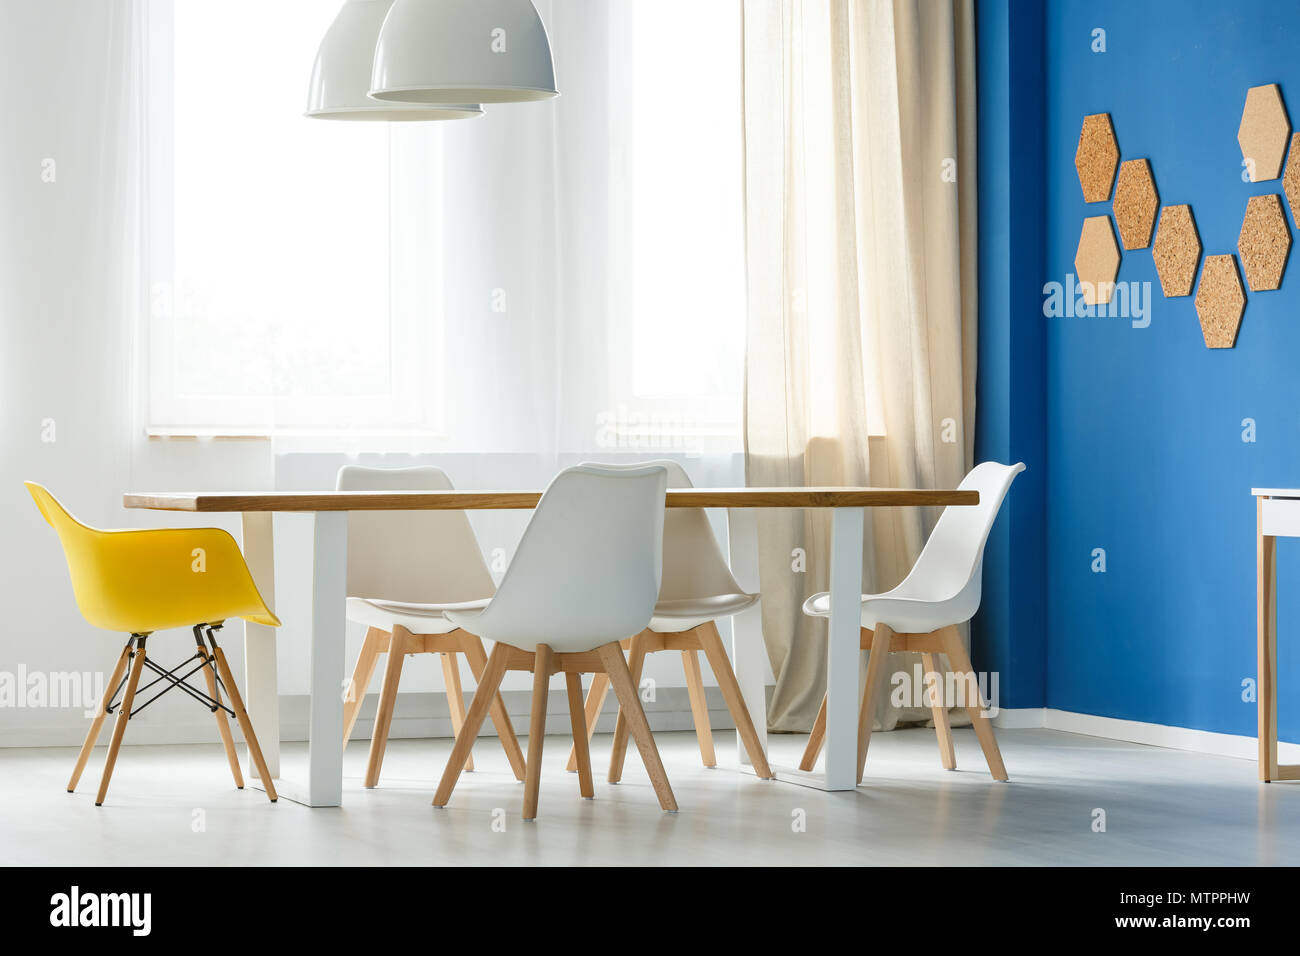 Multifunktionale skandinavischen Home Interior mit Gemeinschaftstisch,  weiße und gelbe Stühle, blaue Wand, Lampen und Fenster mit Lichtvorhänge  Stockfotografie - Alamy